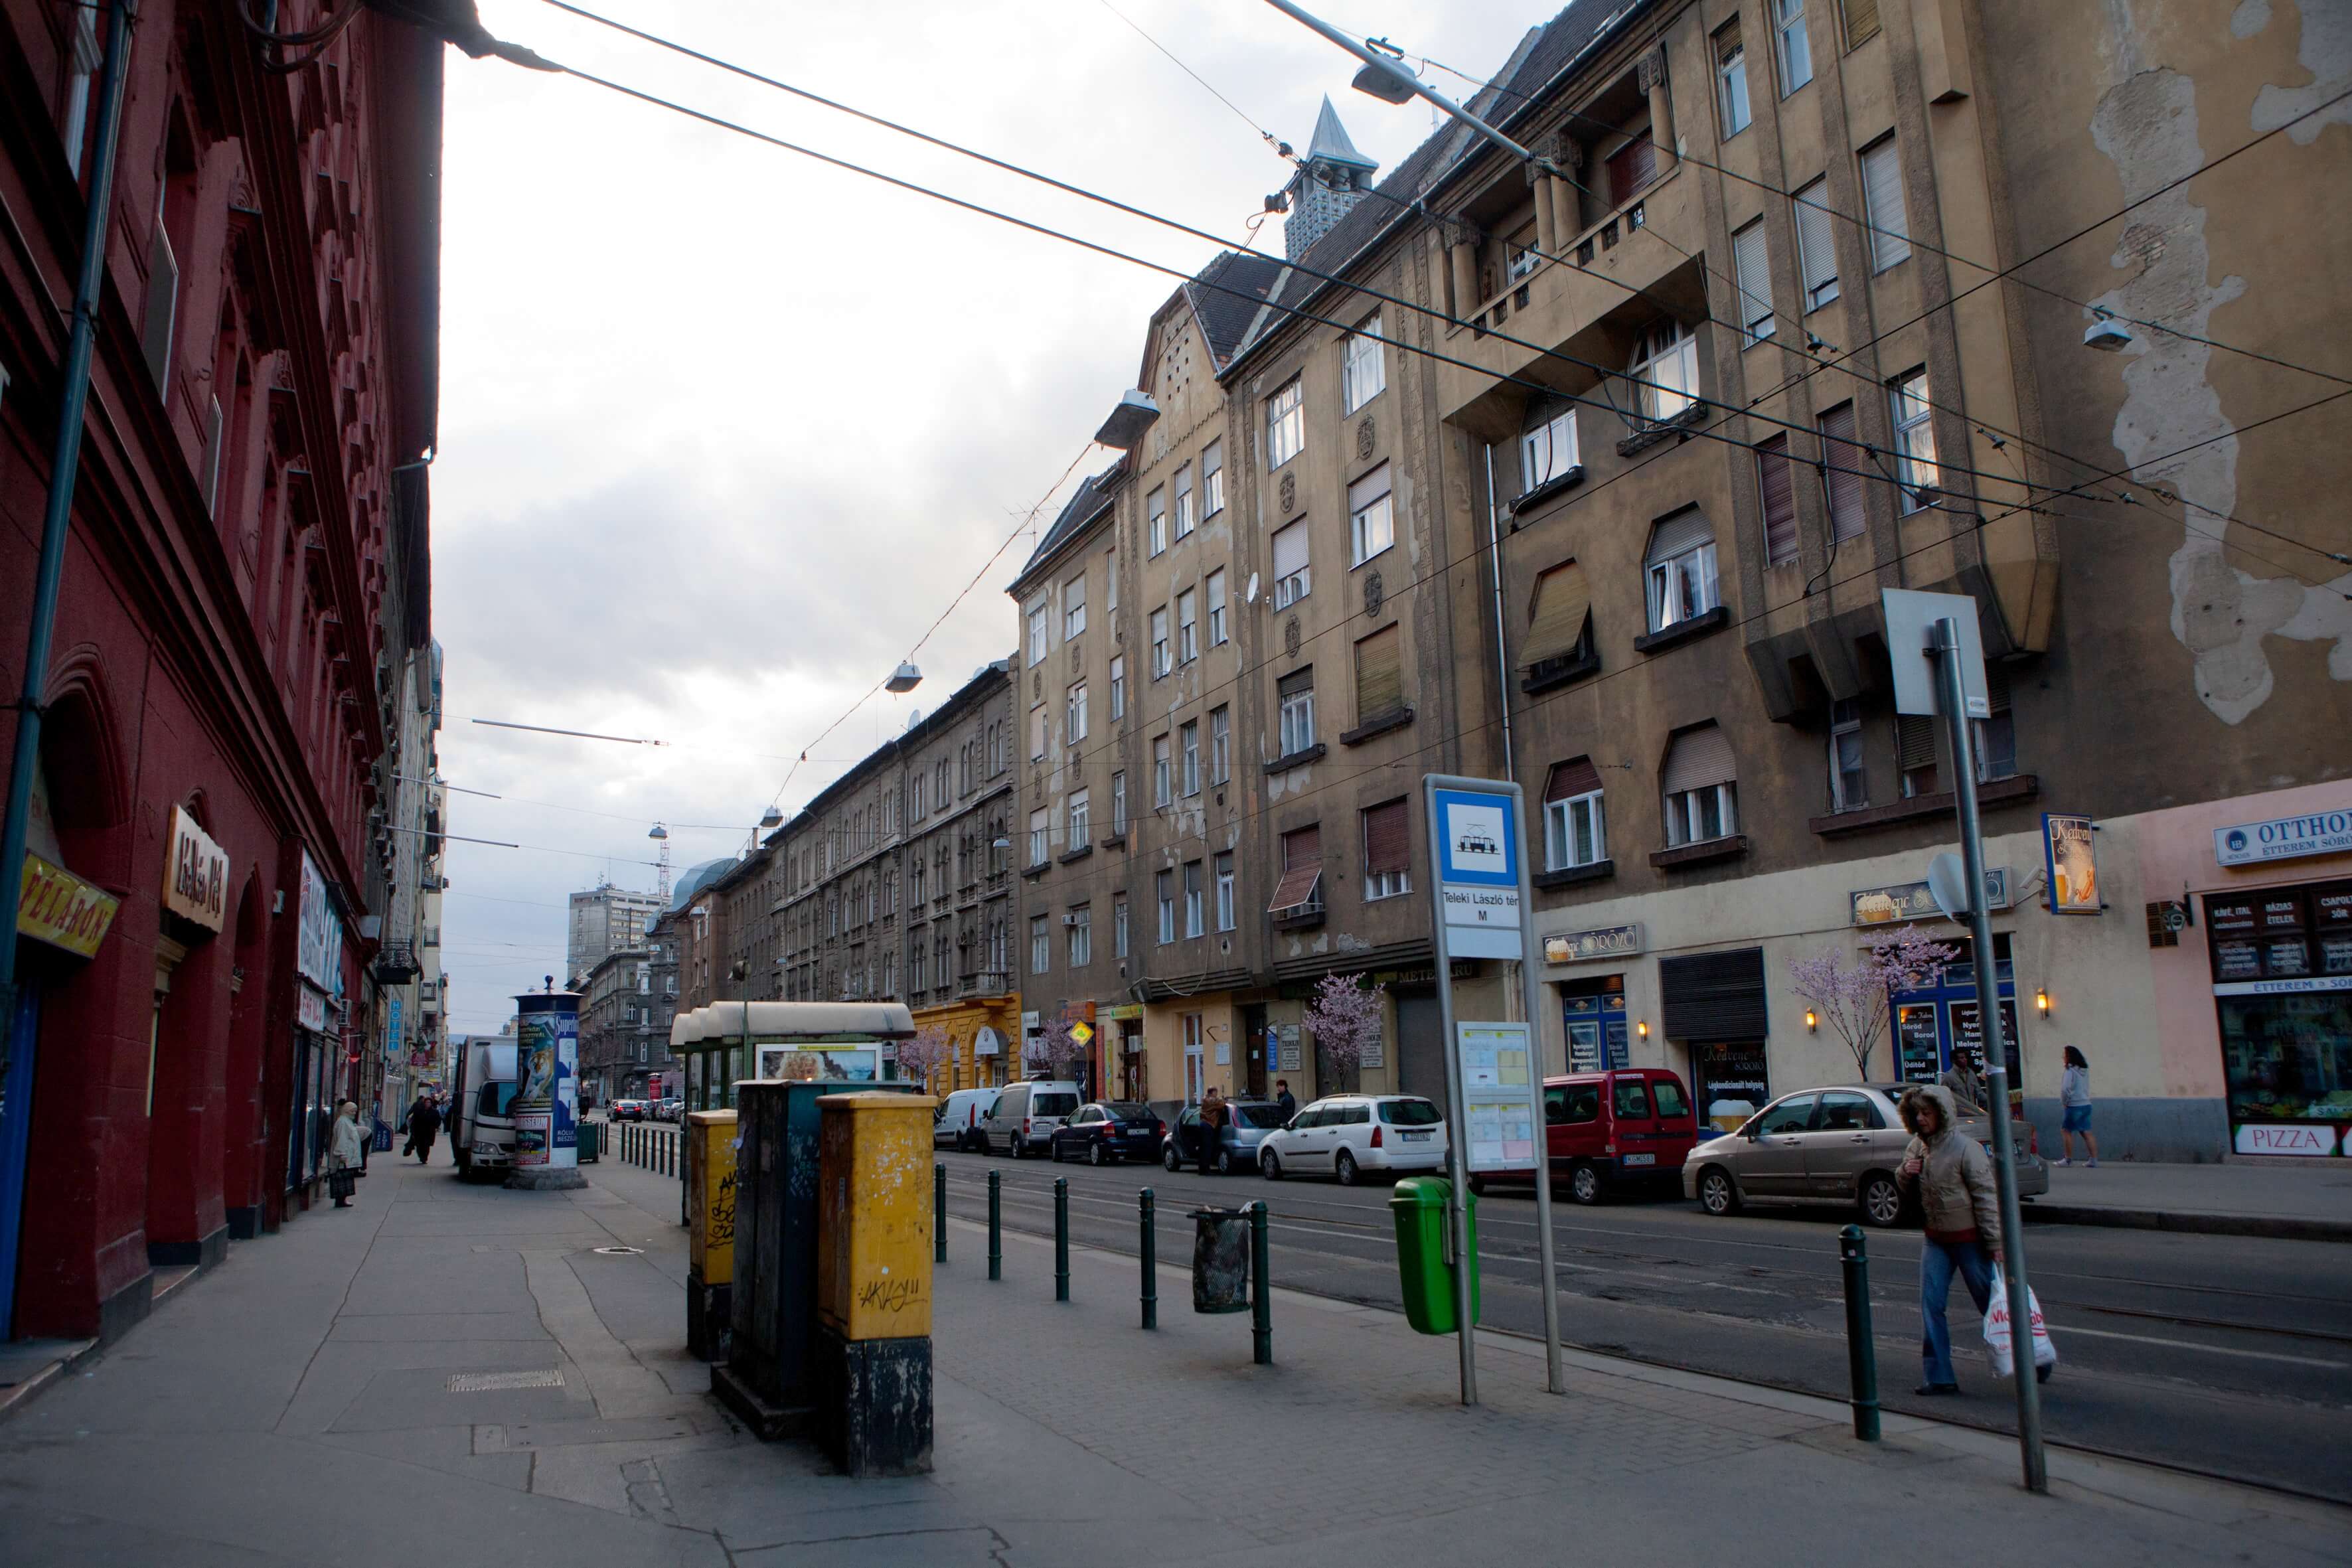 Meglepően jó lakásokat vehetünk a Budapest egyik hírhedt utcájában